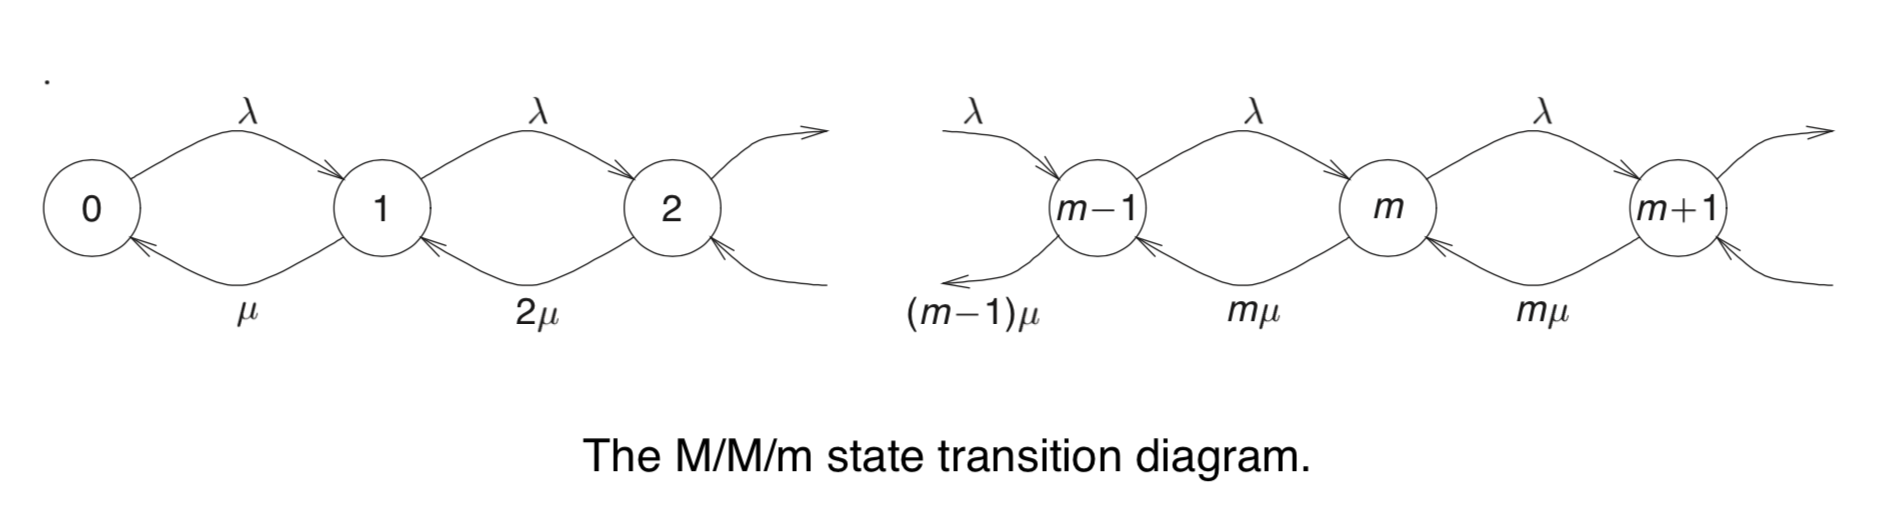 M/M/m 排队系统状态转移图